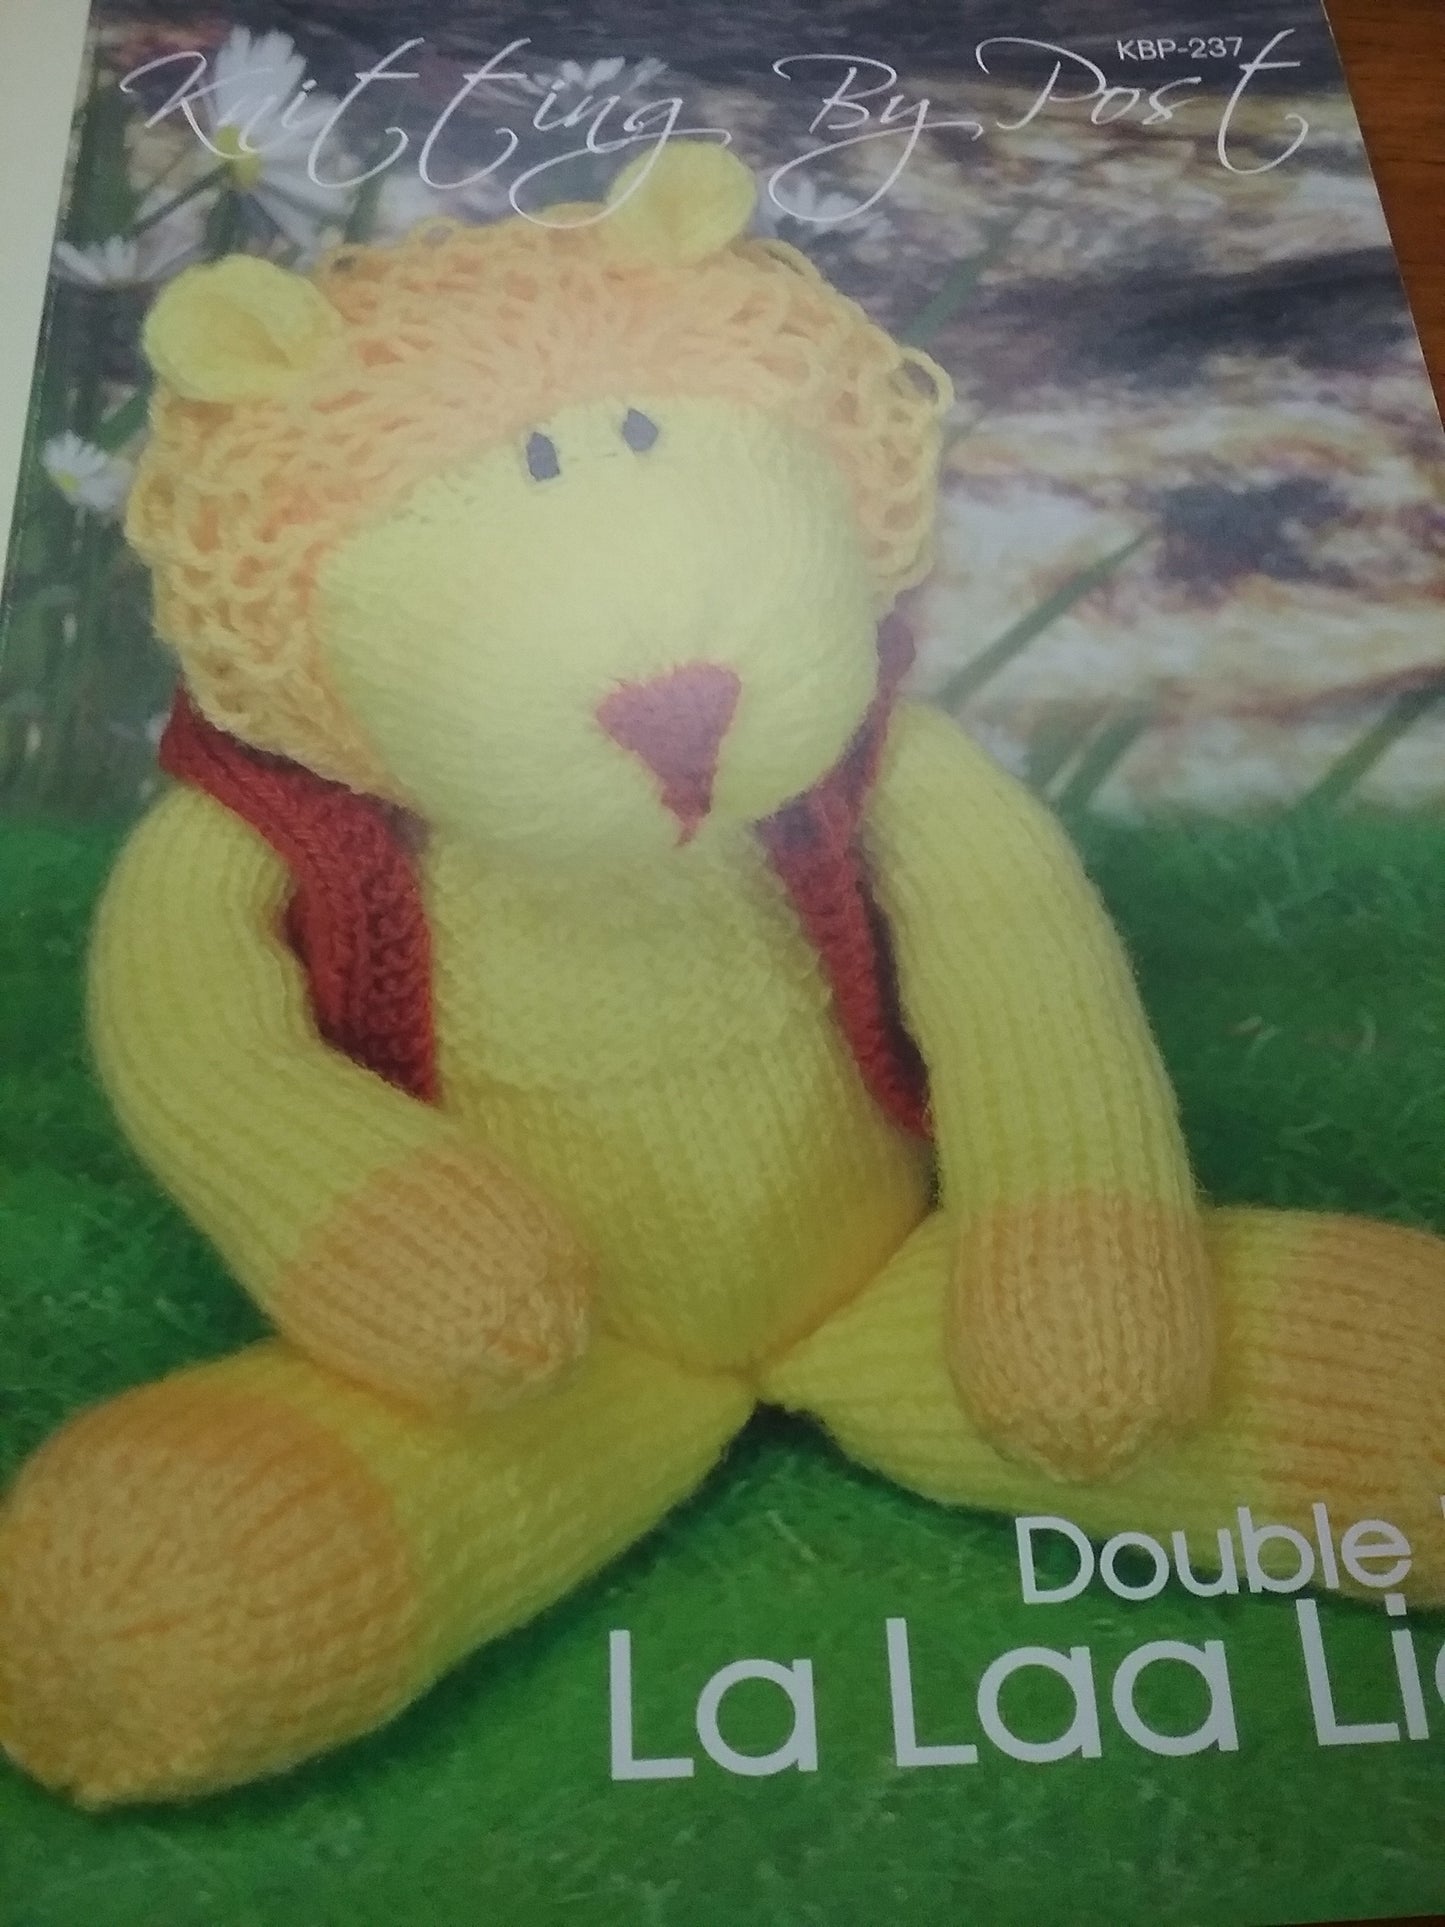 KBP-237 La Laa Lion toy in DK knitting pattern